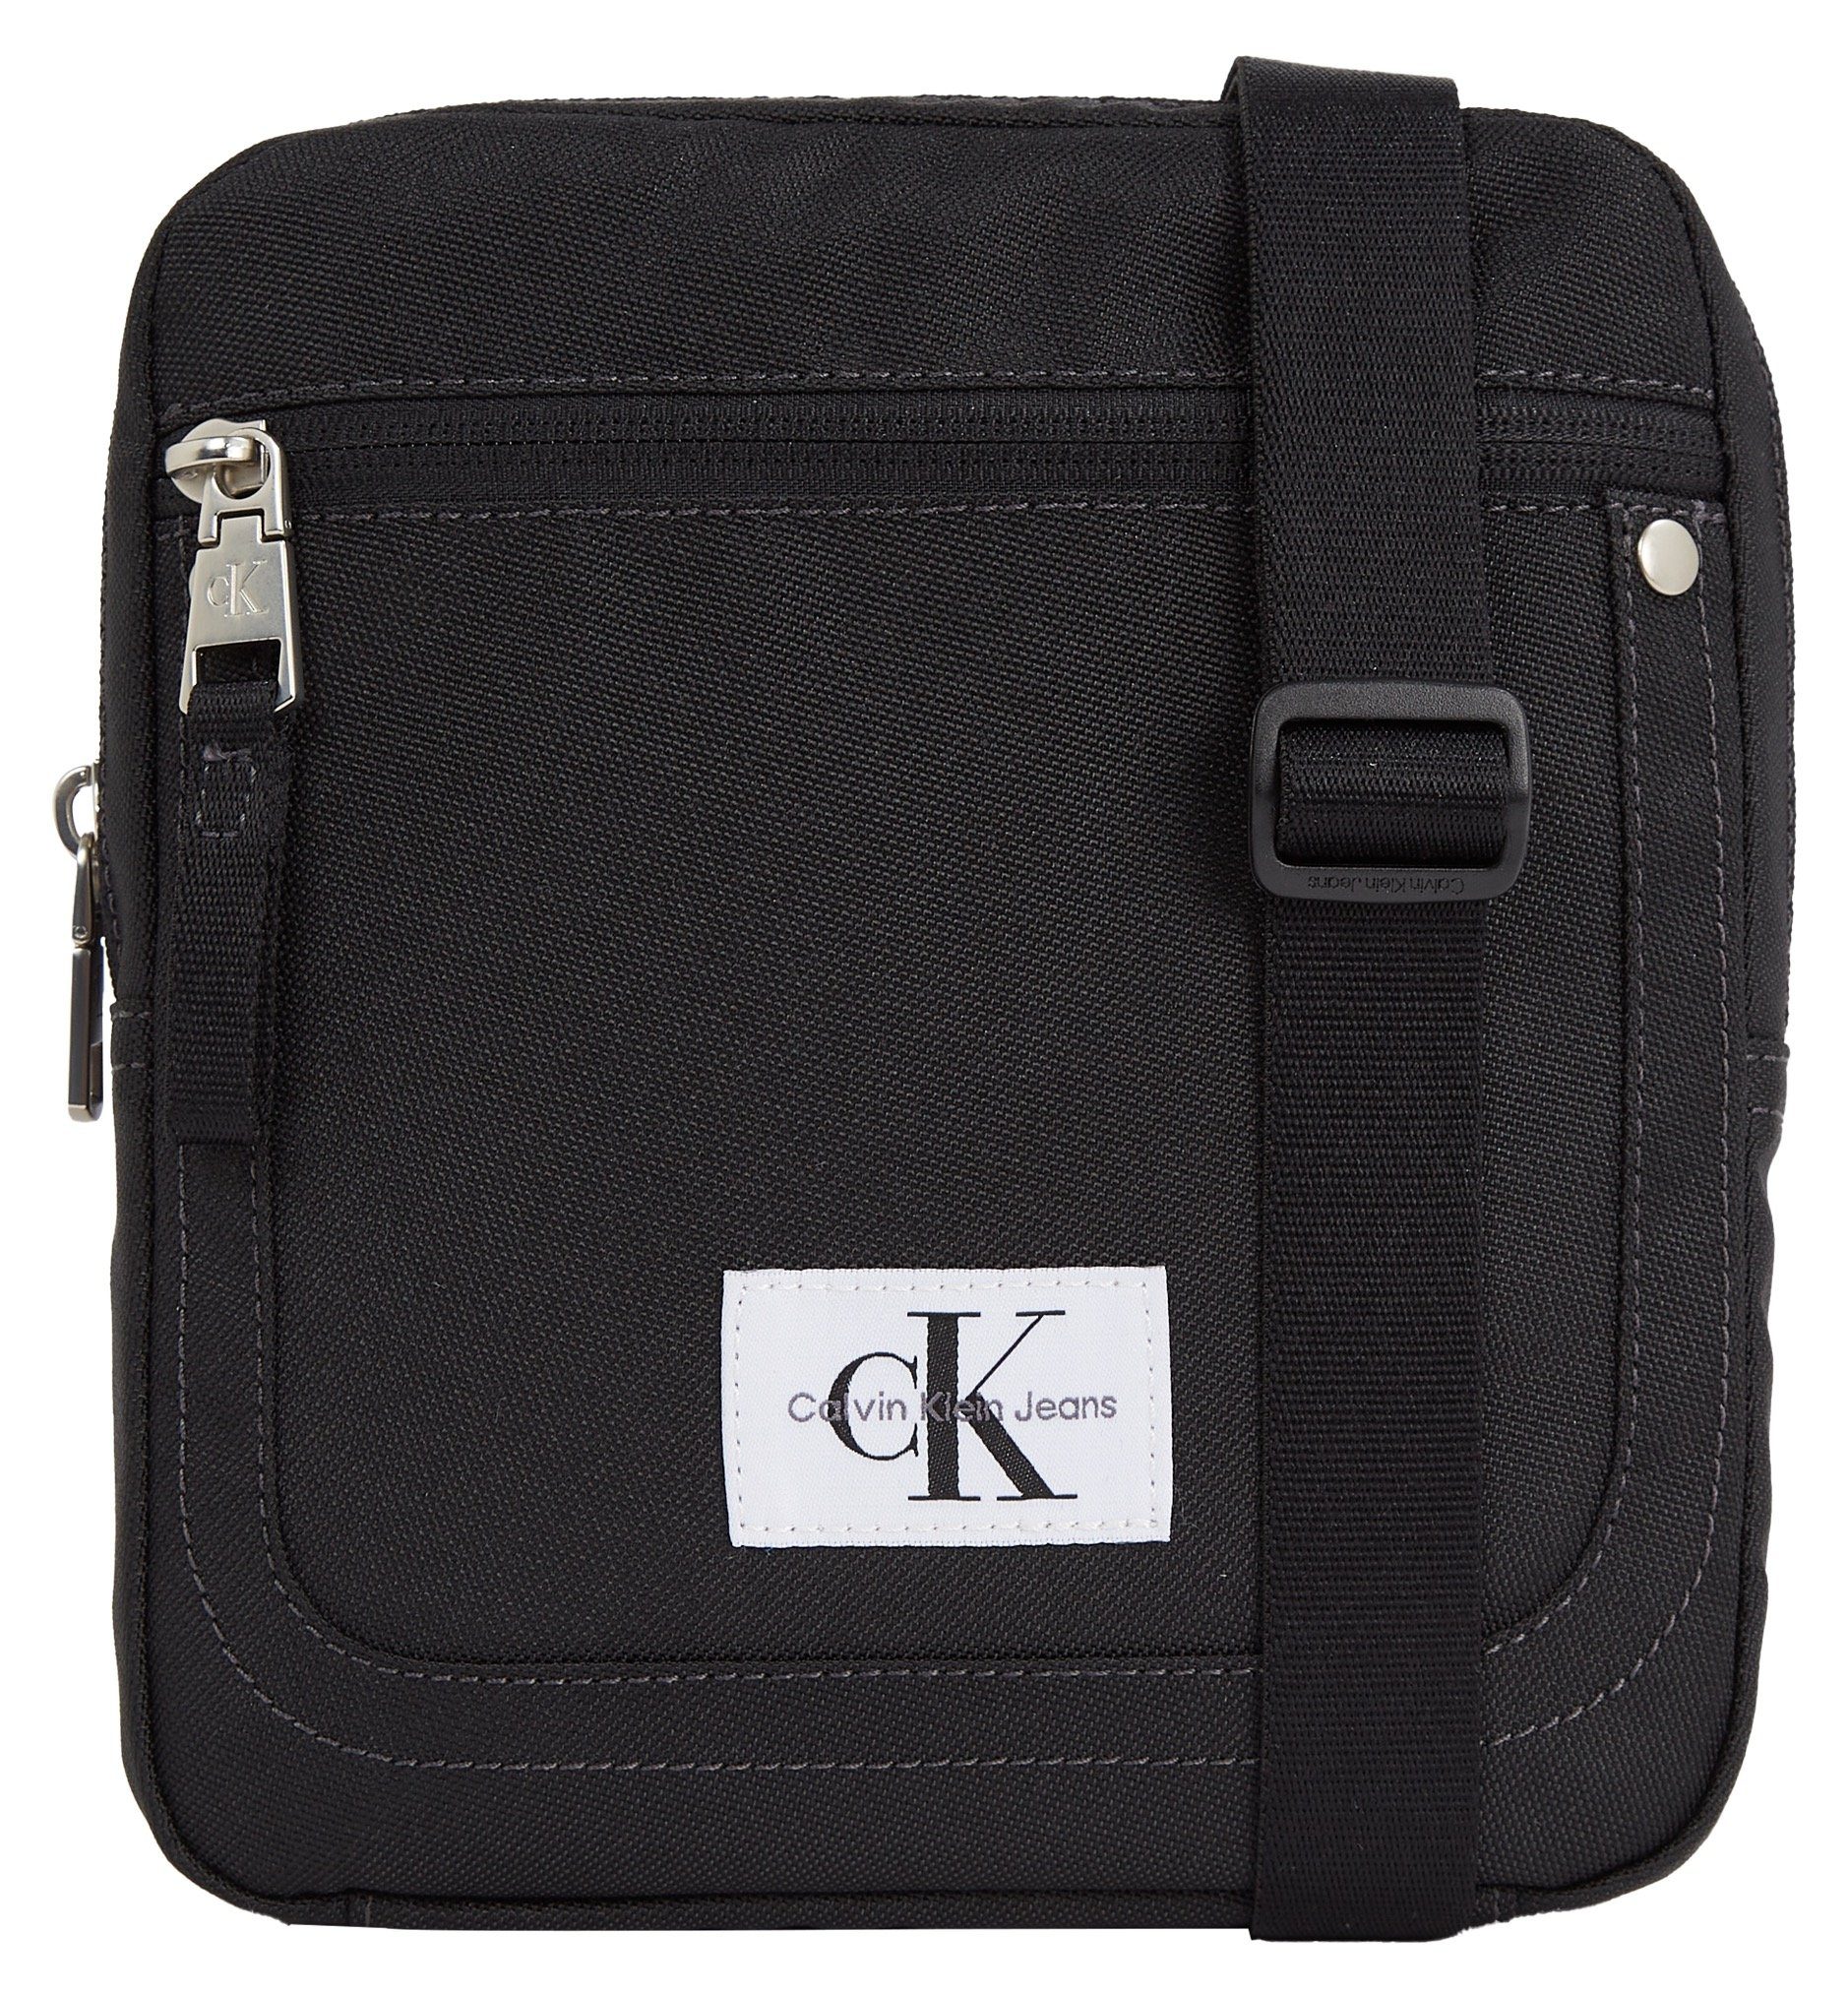 Calvin Klein Jeans Mini Bag SPORT ESSENTIALS REPORTER18 W, in schlichtem Design schwarz | Minitaschen